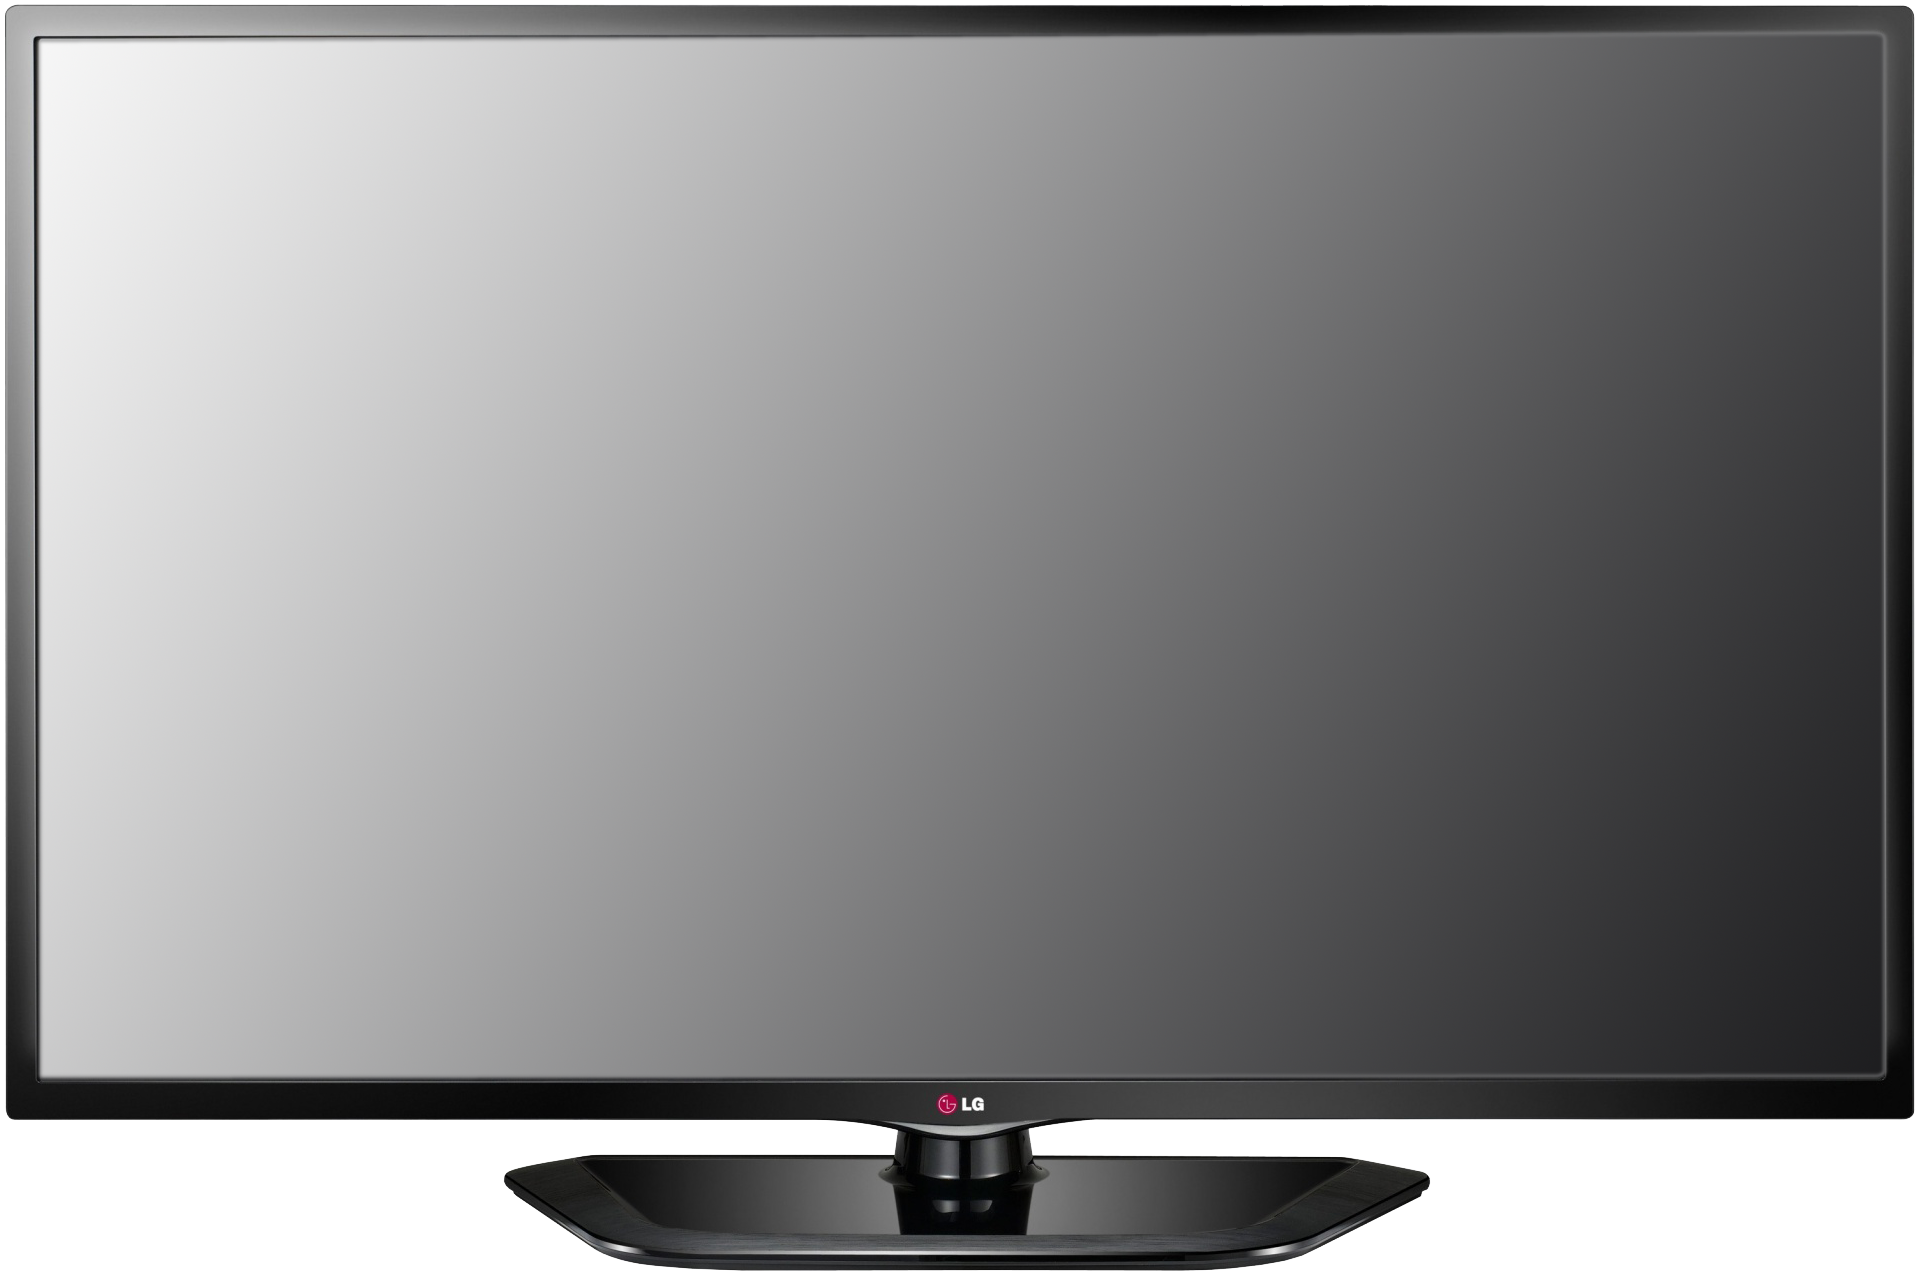 Screen для телевизора. LG 32ln548c. Телевизор/Television "TV (42) LG 43lj594". Телевизор LG 42ln548c 42". Телевизор LG 32ln548c 32".